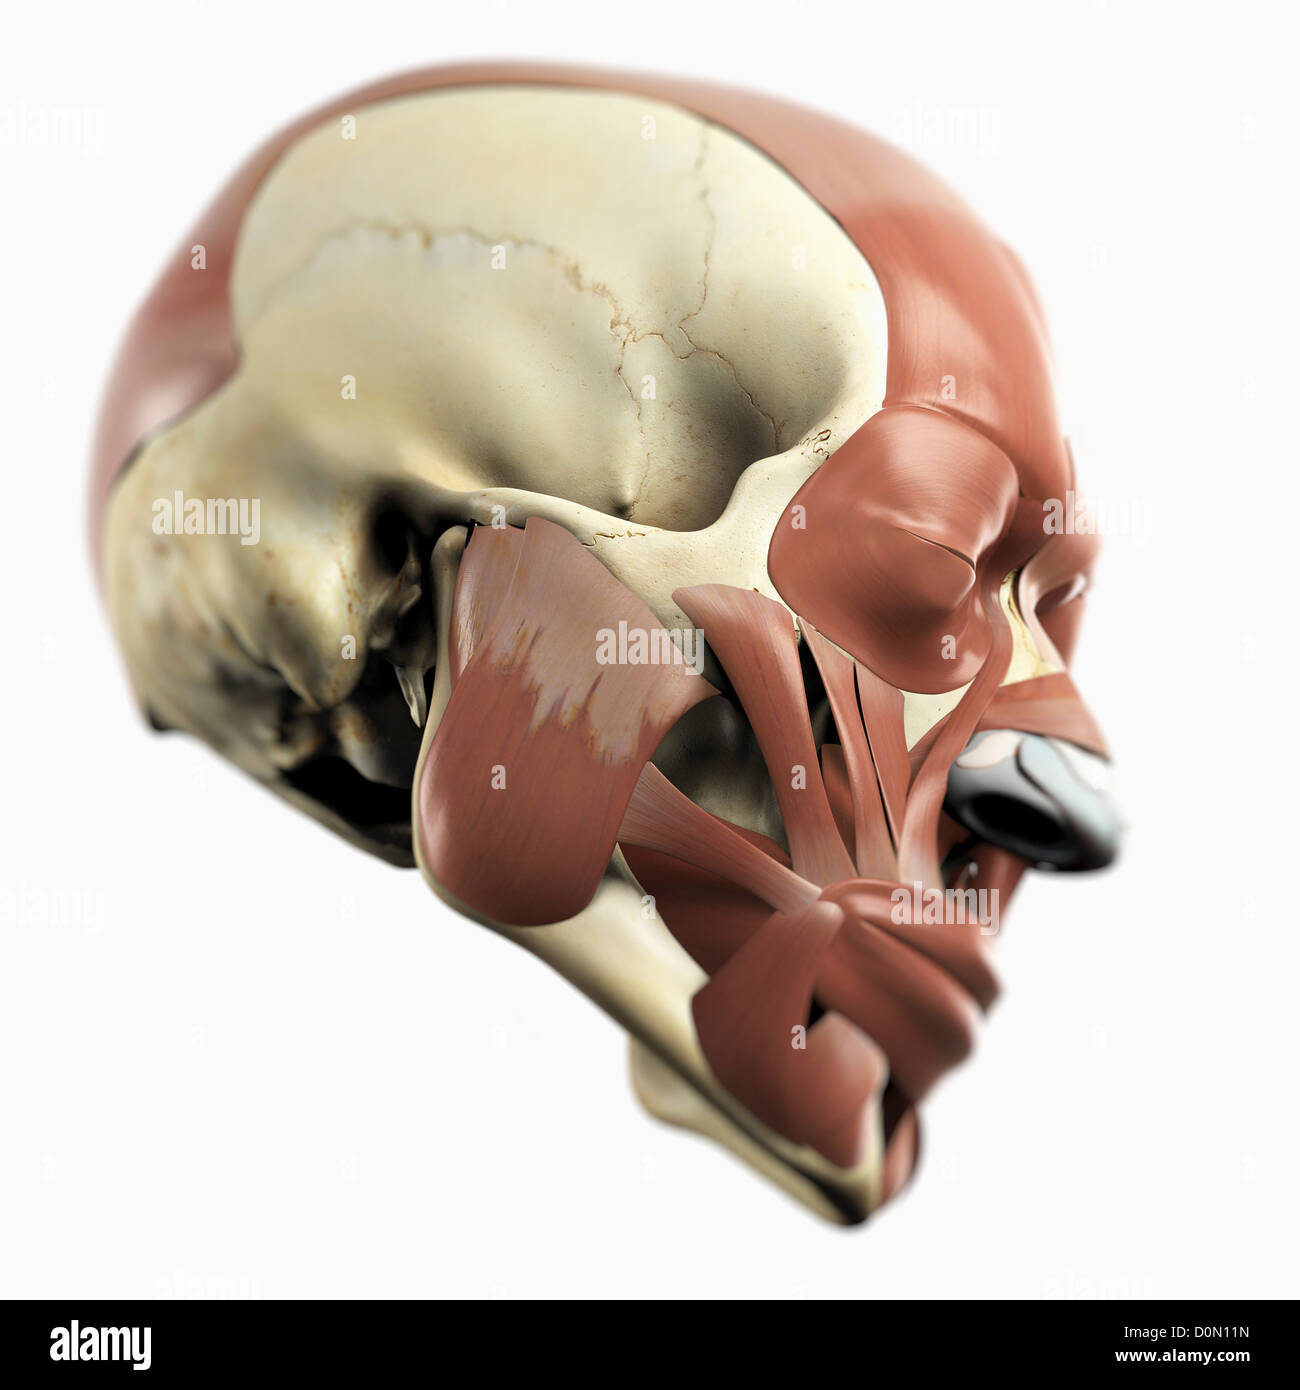 Anatomisches Modell zeigt die mimische Muskulatur. Stockfoto